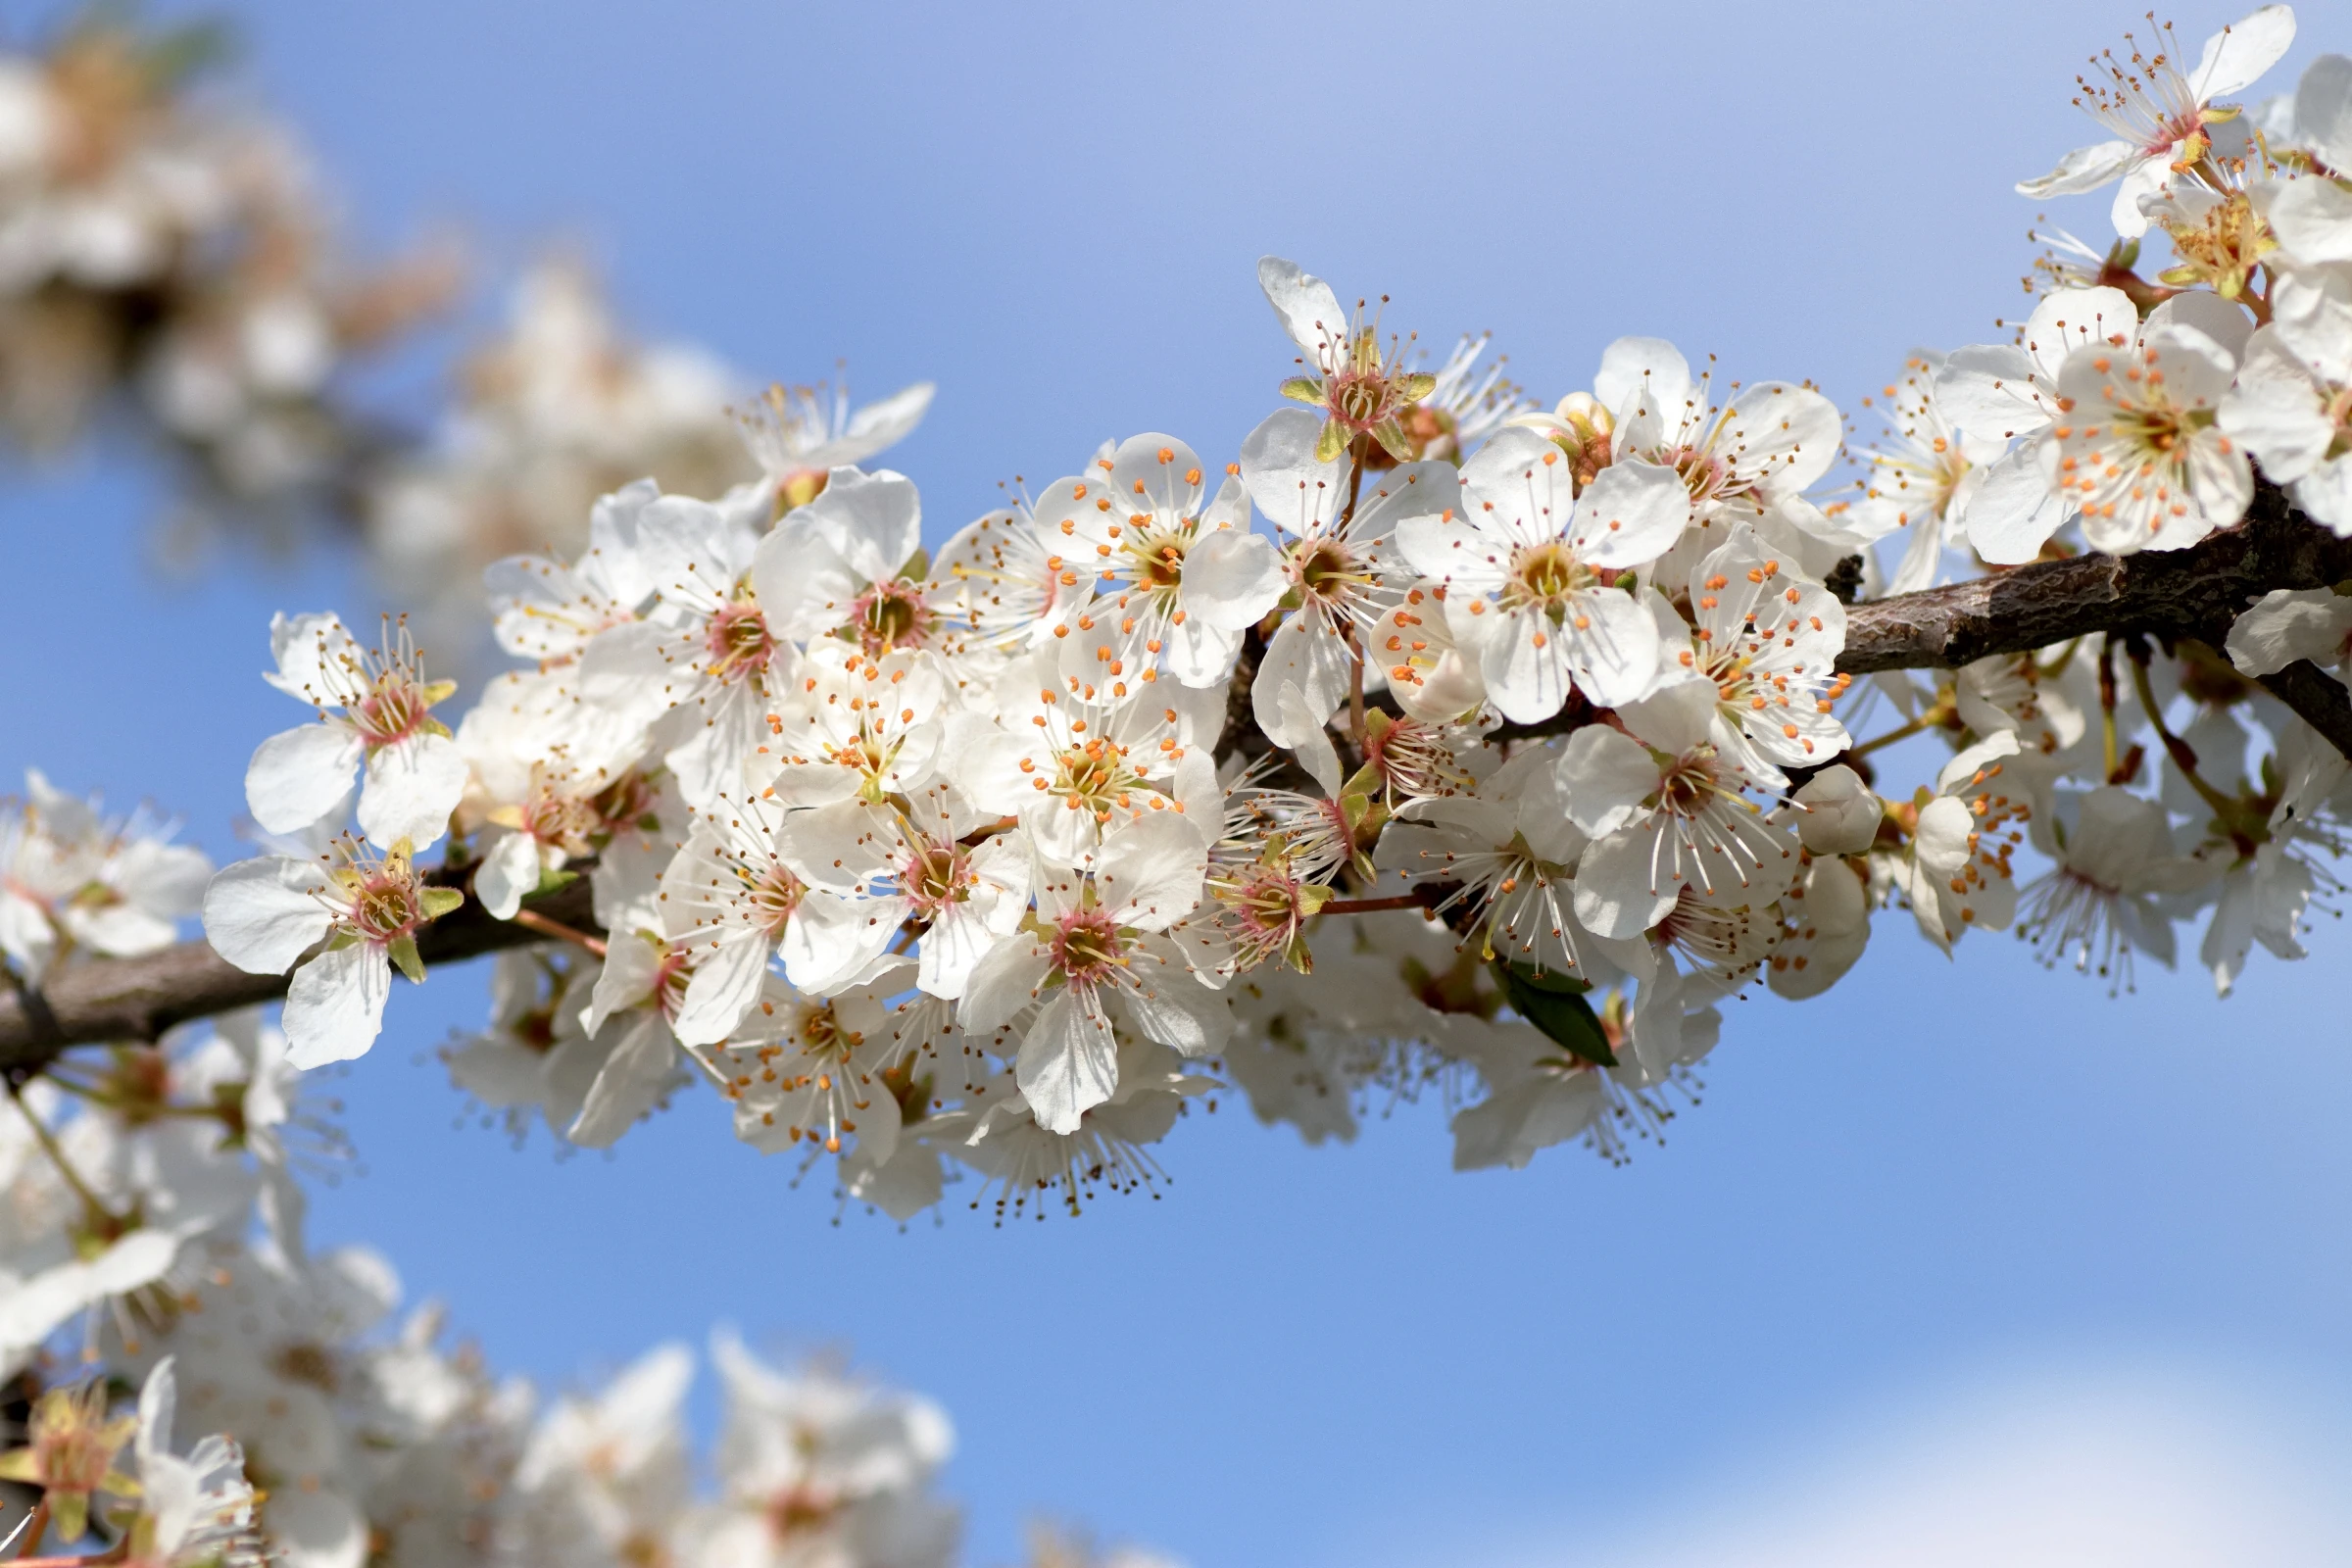 Kirschpflaume - In der Mitte zieht sich ein Blütenstand von links nach rechts durch das Bild. Es handelt sich dabei um eine Ansammlung von Blüten an einem Ast. Die einzelnen Blüten haben eine weiße Färbung und besitzen gelb-orangene Staubblätter.